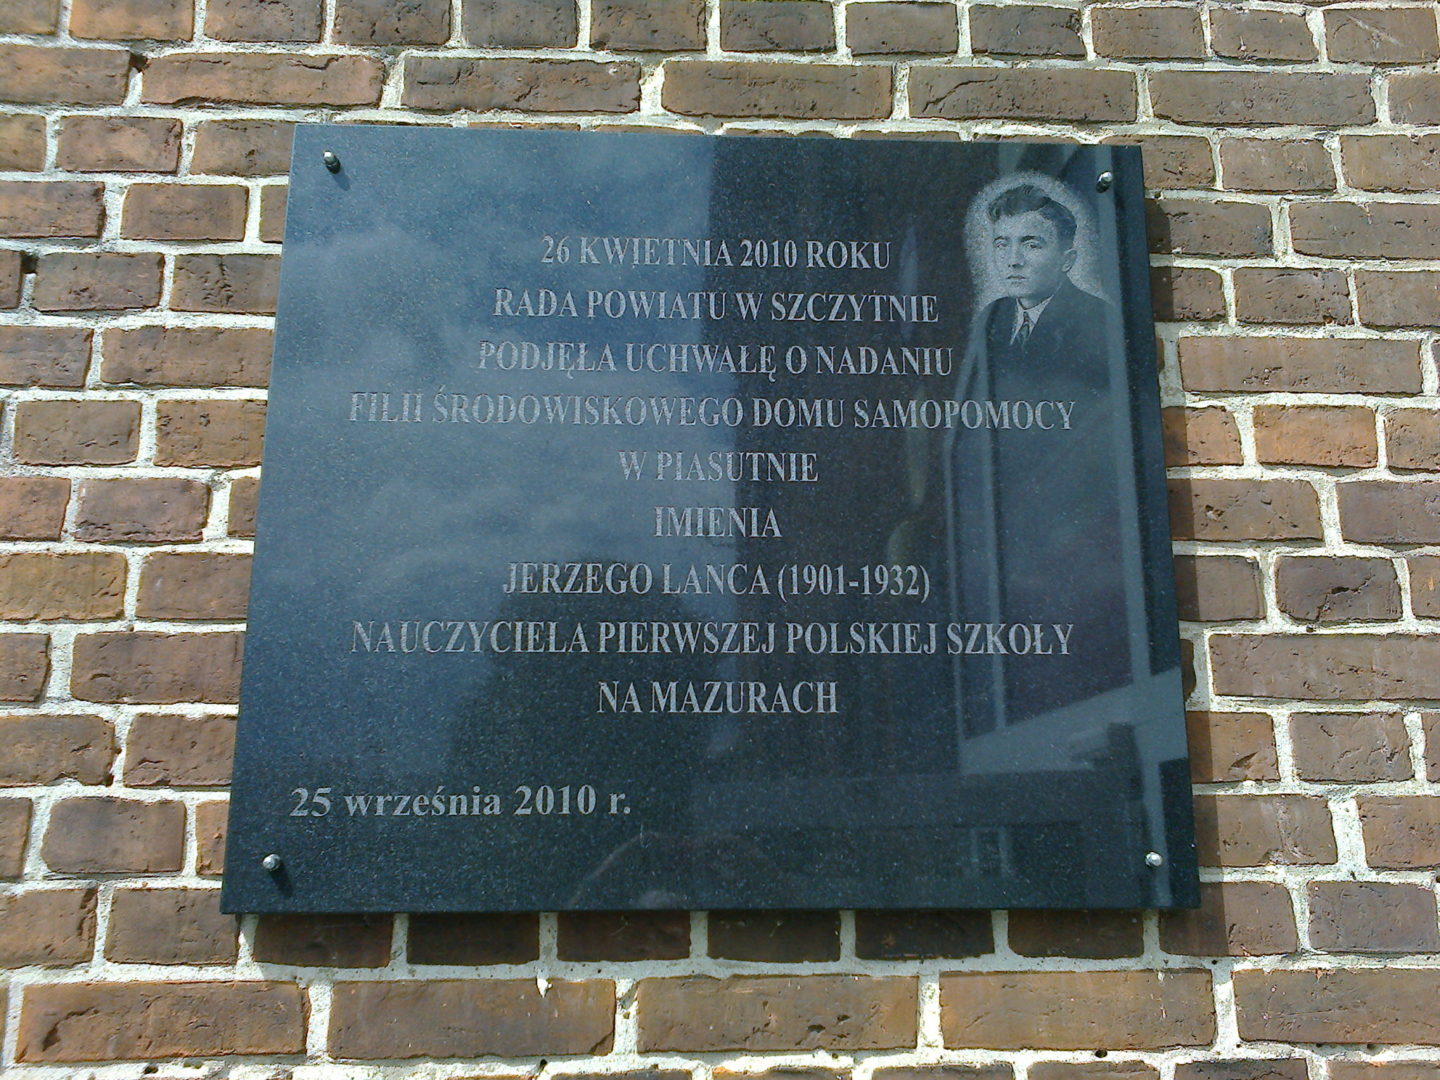 Tablice upamiętniające Jerzego Lanca na budynku szkolnym w Piasutnie